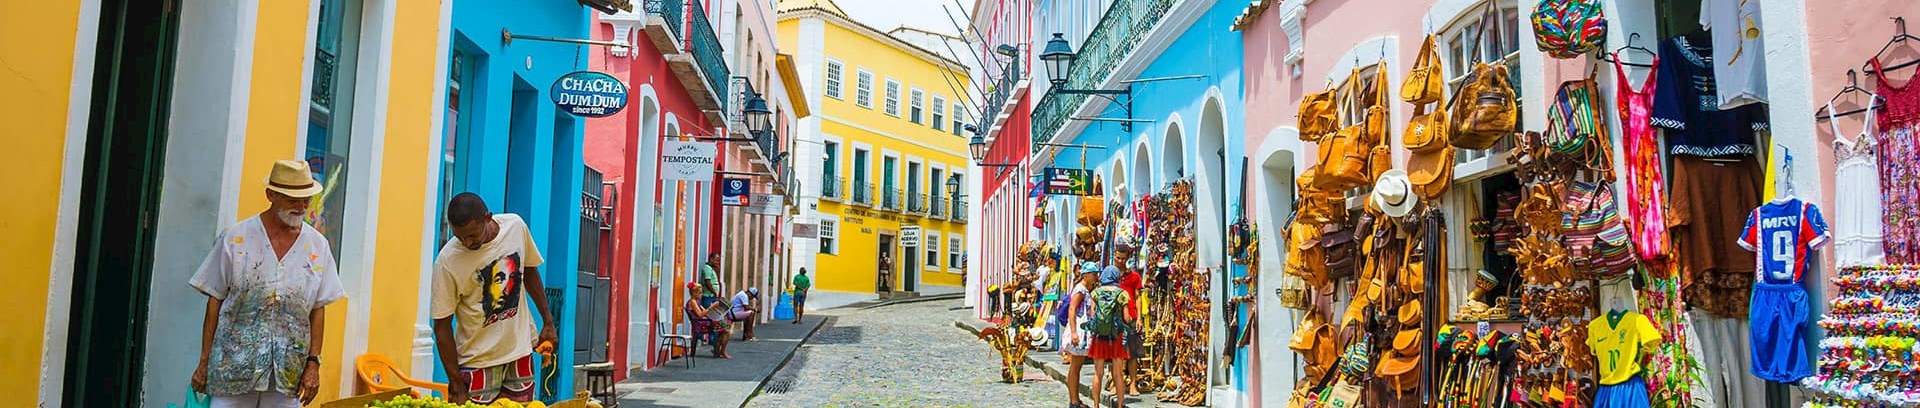 Billede af farvestrålende gade i Salvador, Brasilien